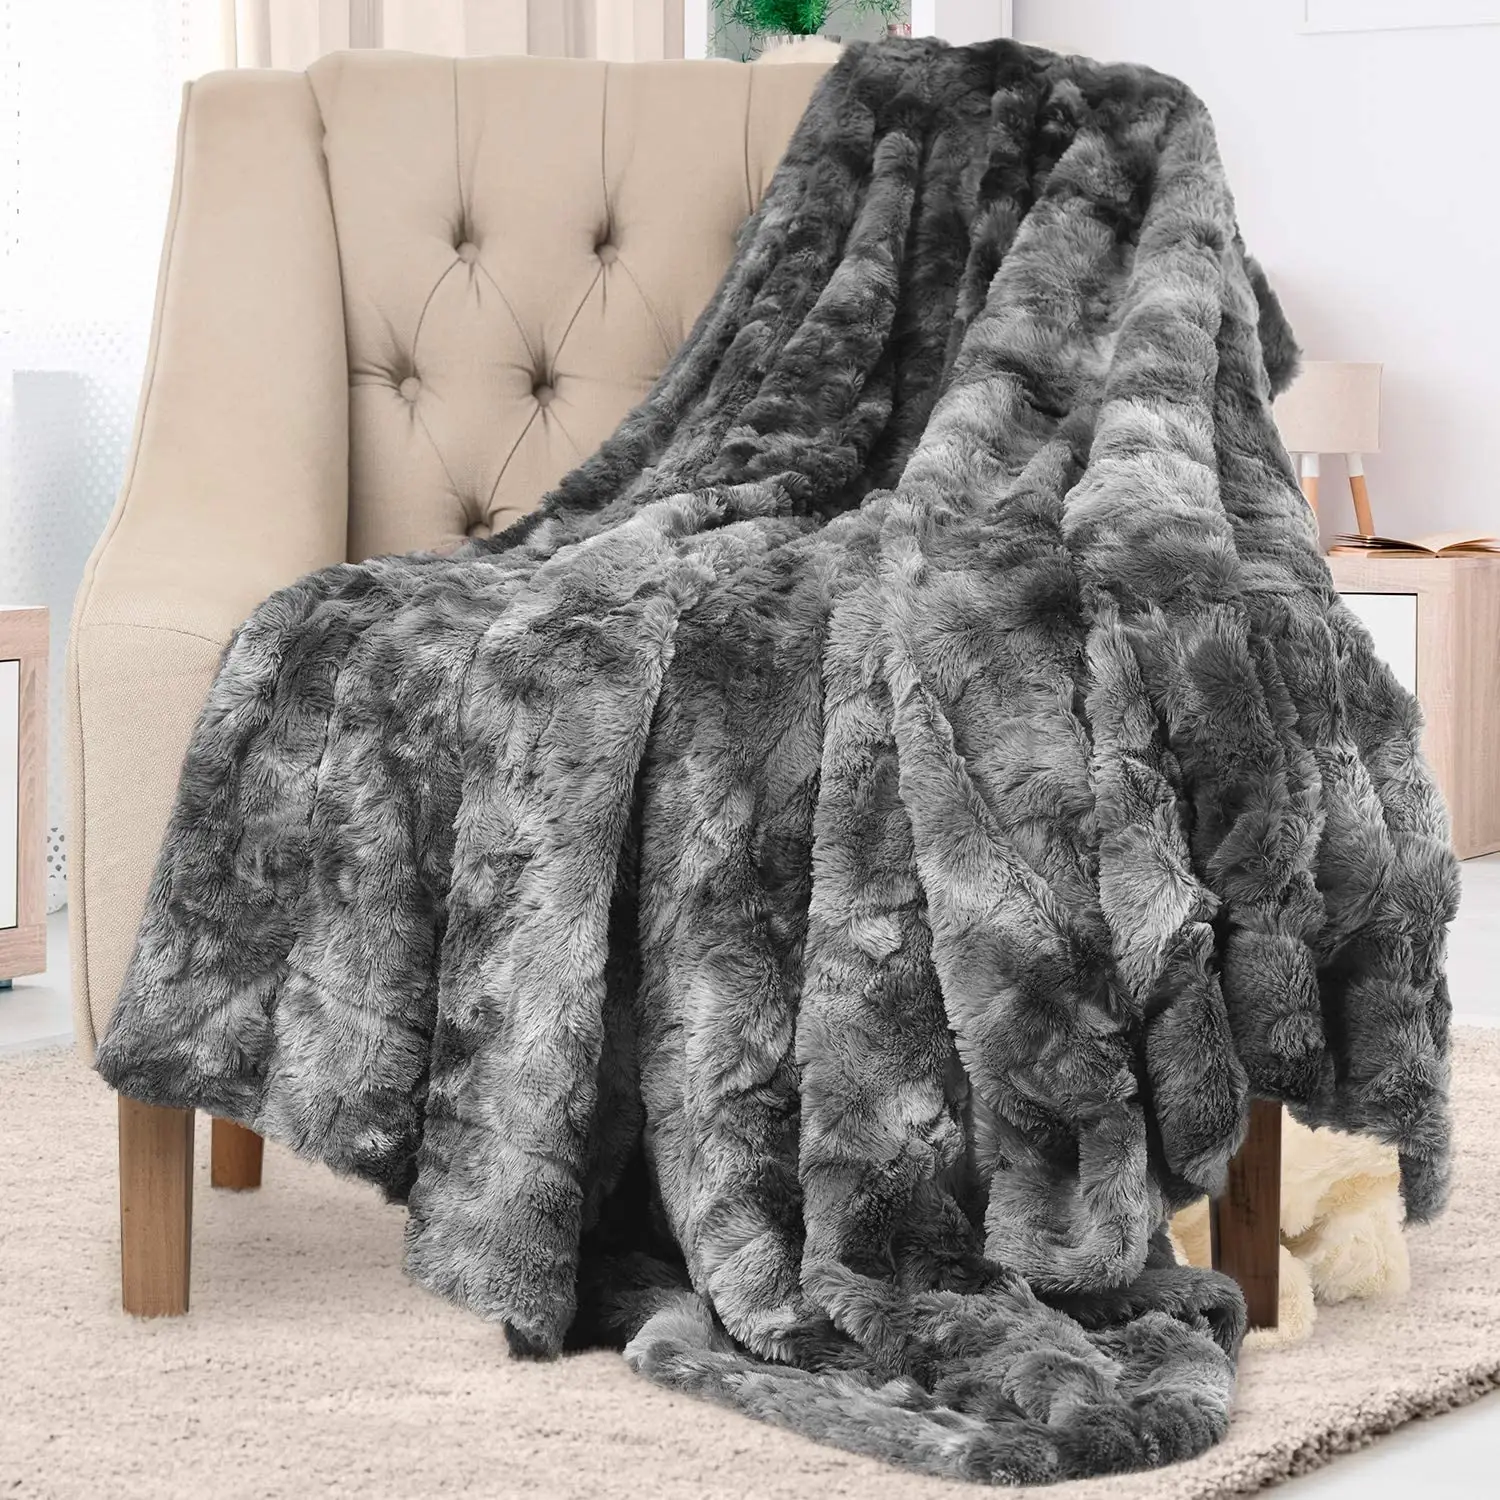 Nuovo prodotto inverno lusso bianco e stampa leopardo Design coperta in pelliccia sintetica per tiro invernale coperta morbida e confortevole per divano letto